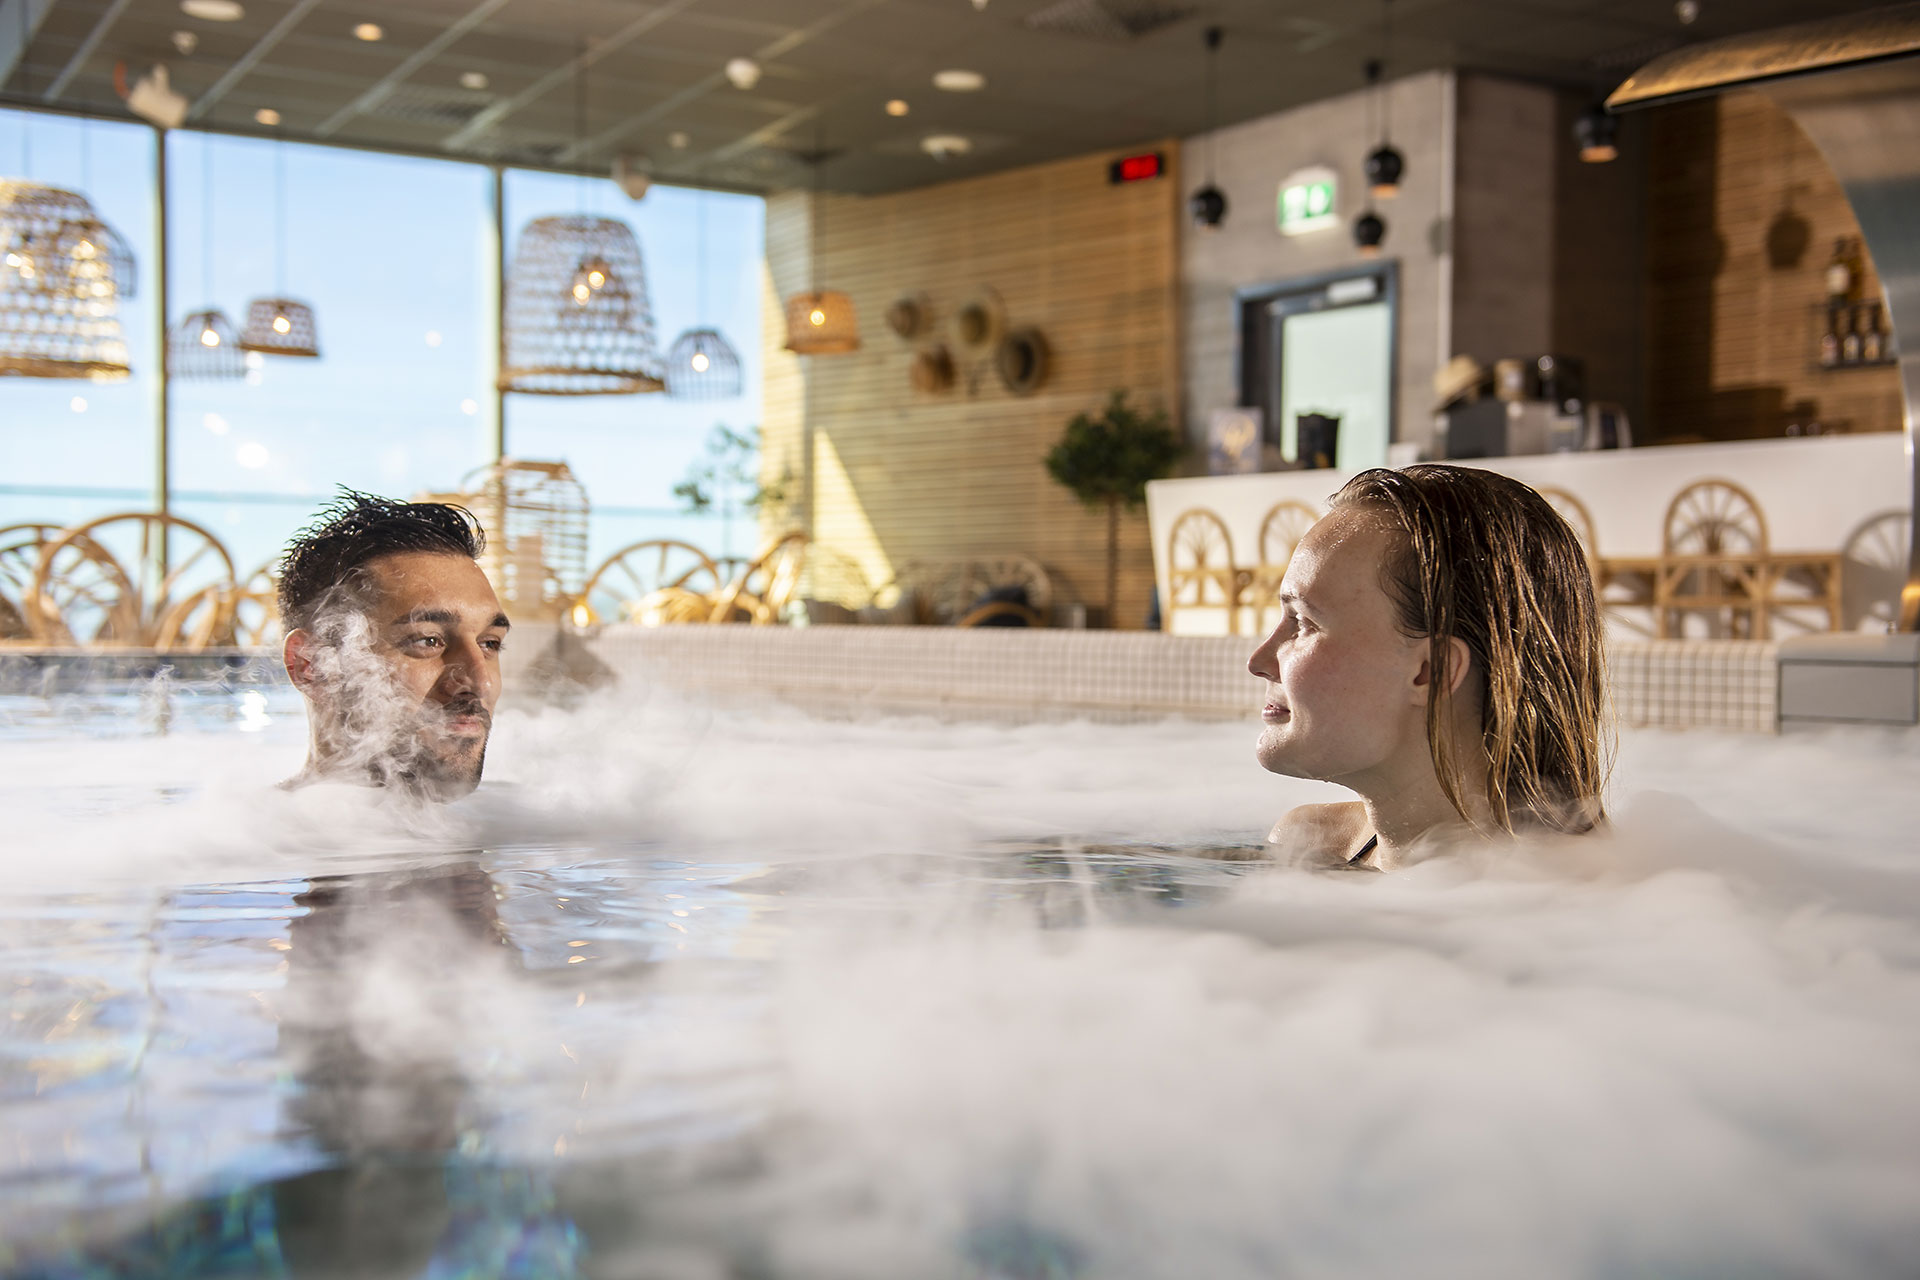 Par badar på spa, Kokpunkten i Västerås. Foto: Pressbild